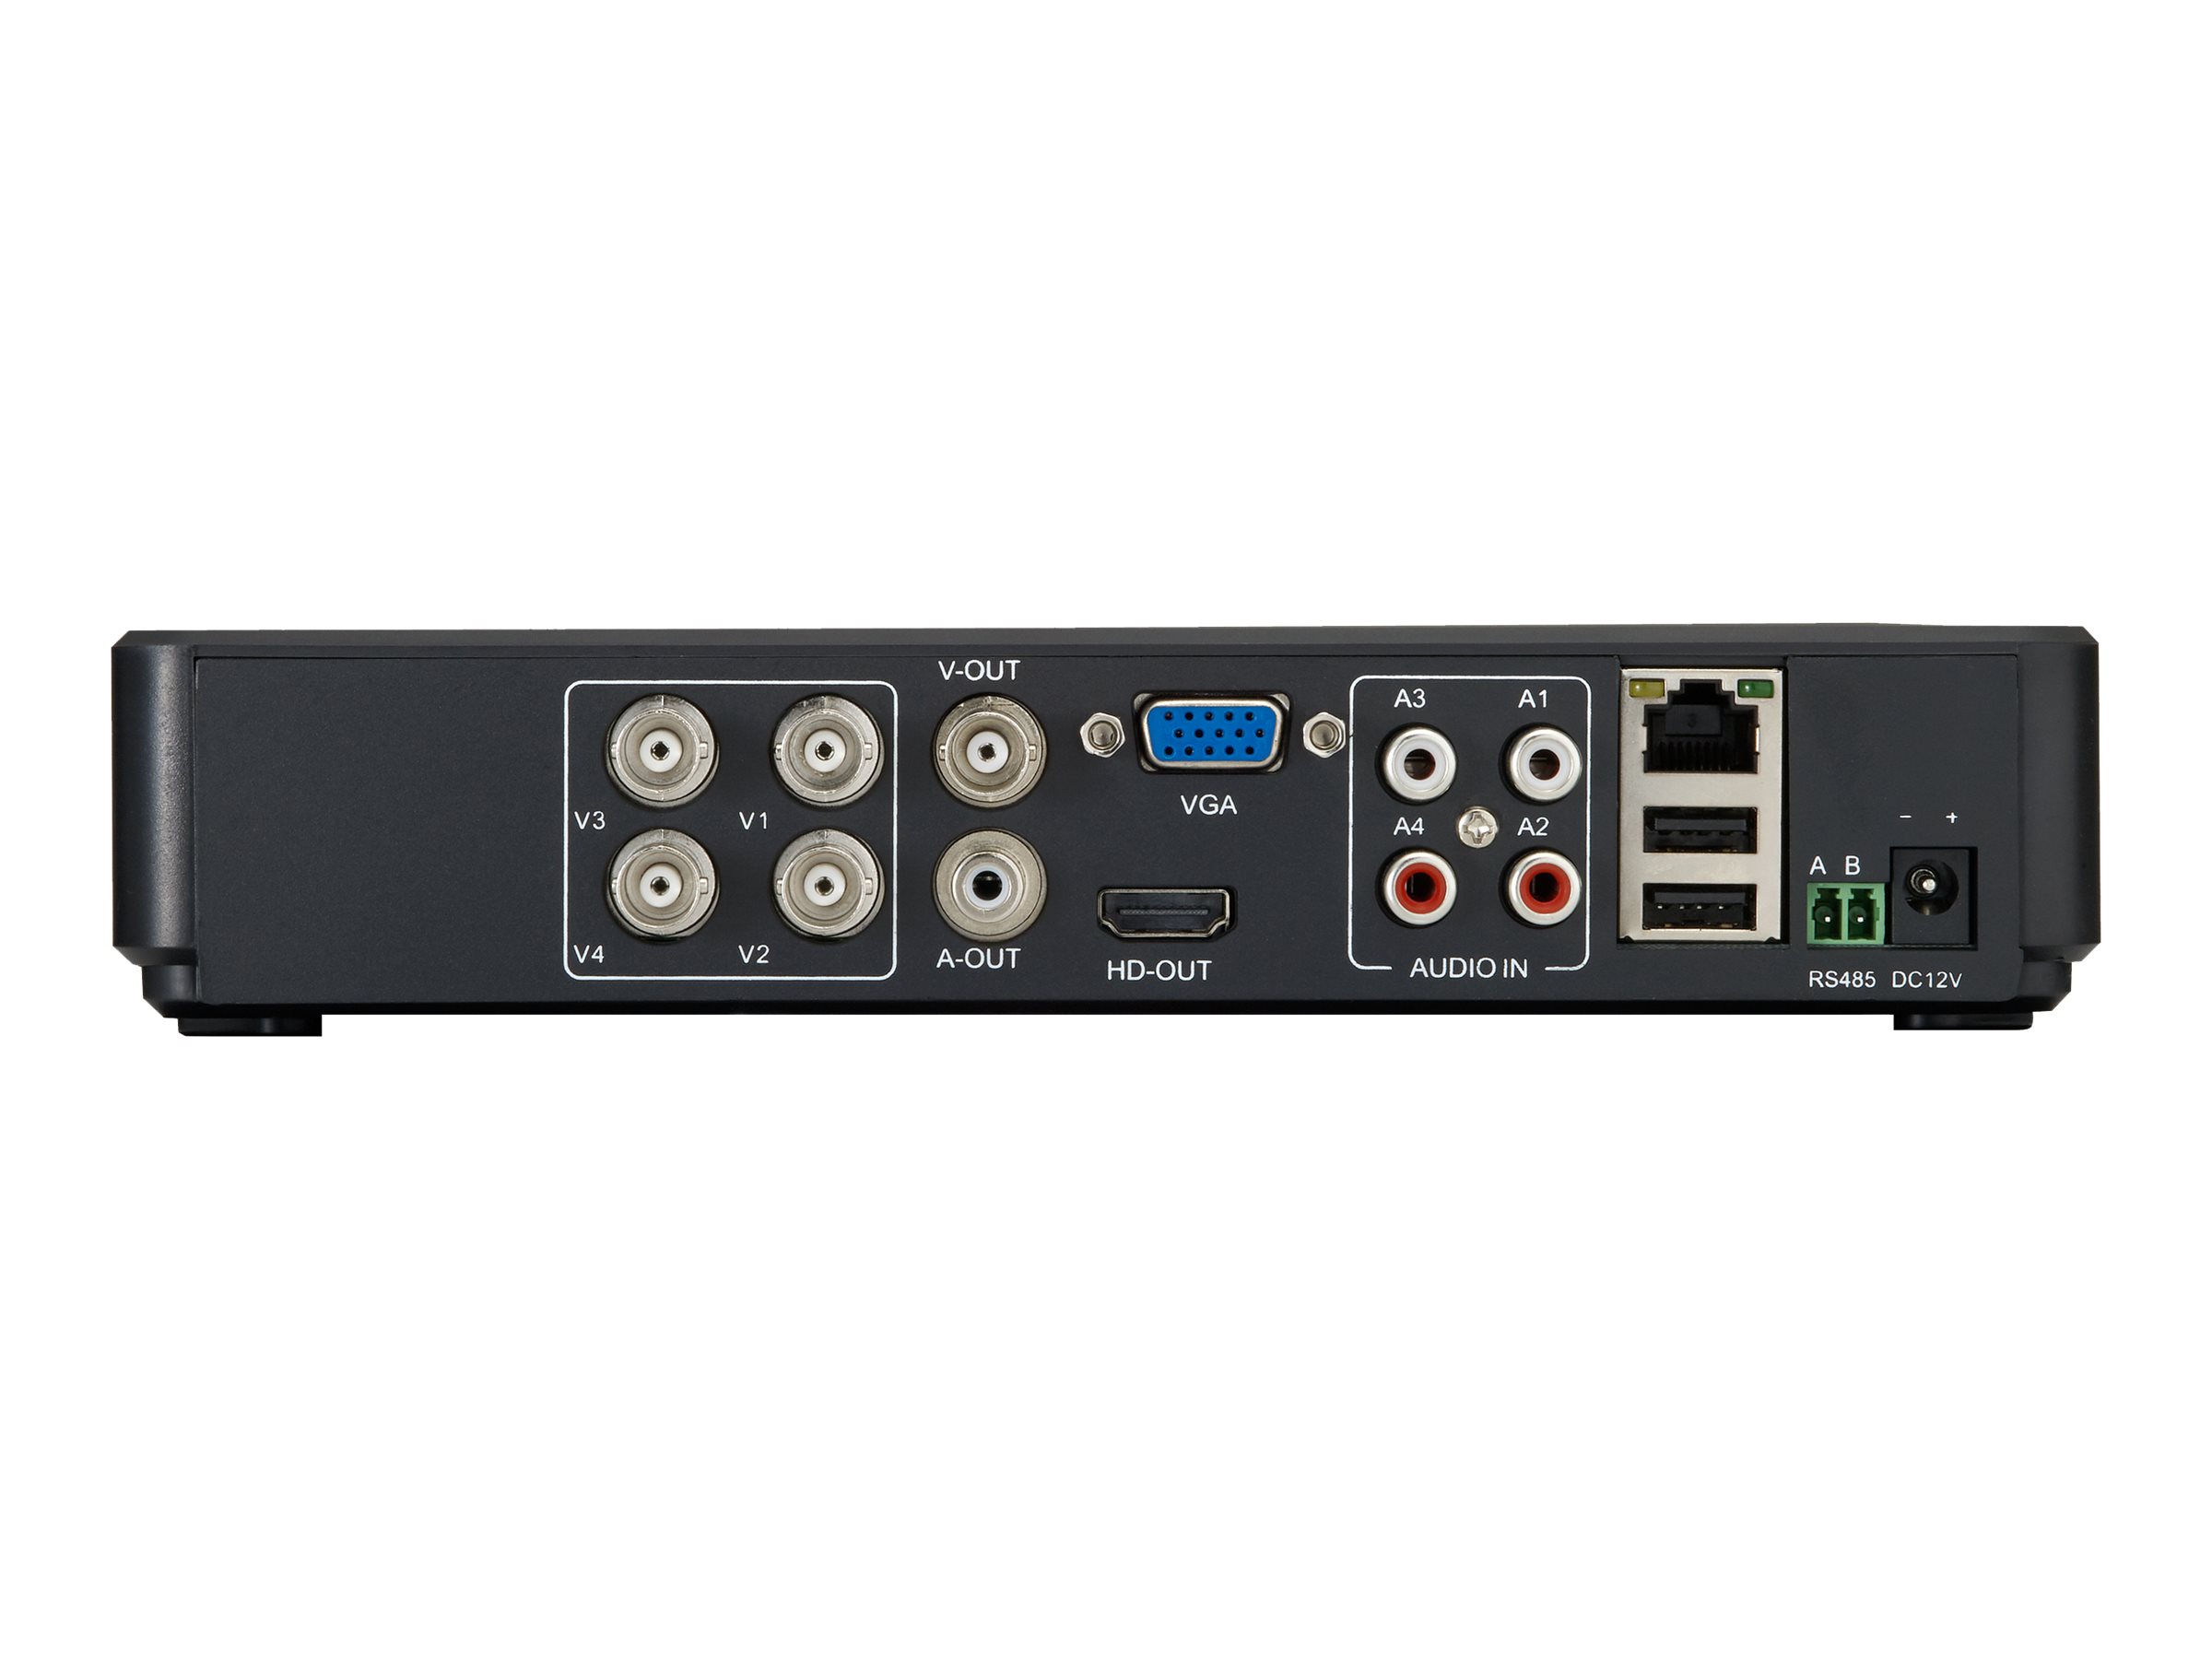 LevelOne DSK-4001 - DVR + Kamera(s) - verkabelt (LAN)